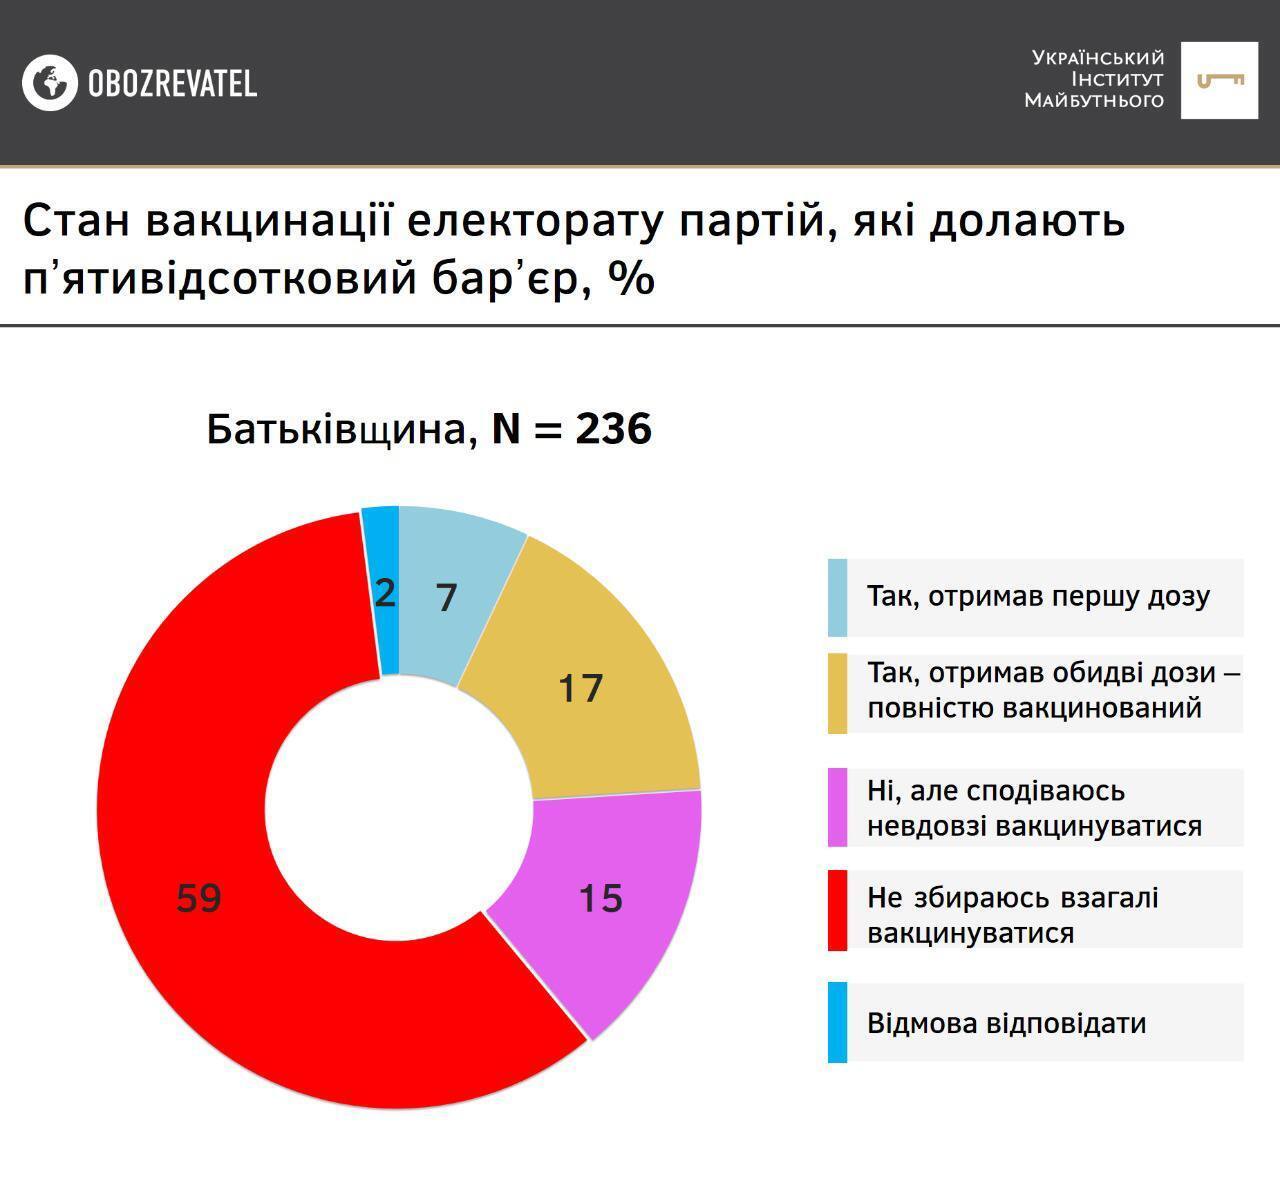 Результаты опроса среди сторонников партии "Батькивщина"